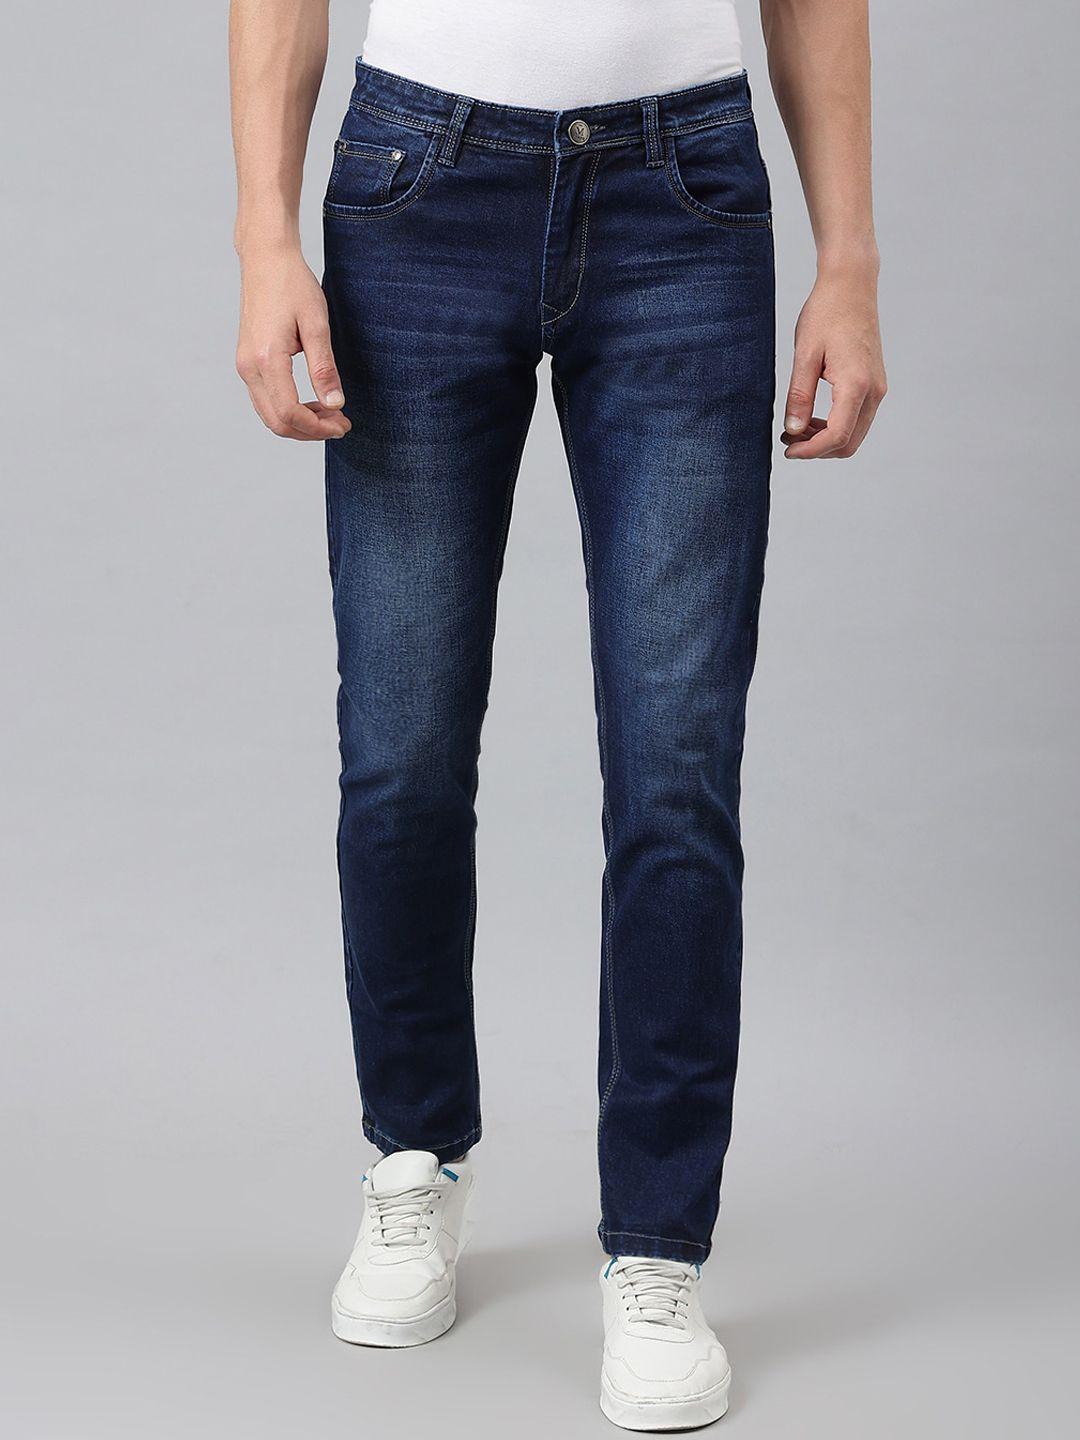 mr-button-men-blue-slim-fit-light-fade-cotton-jeans